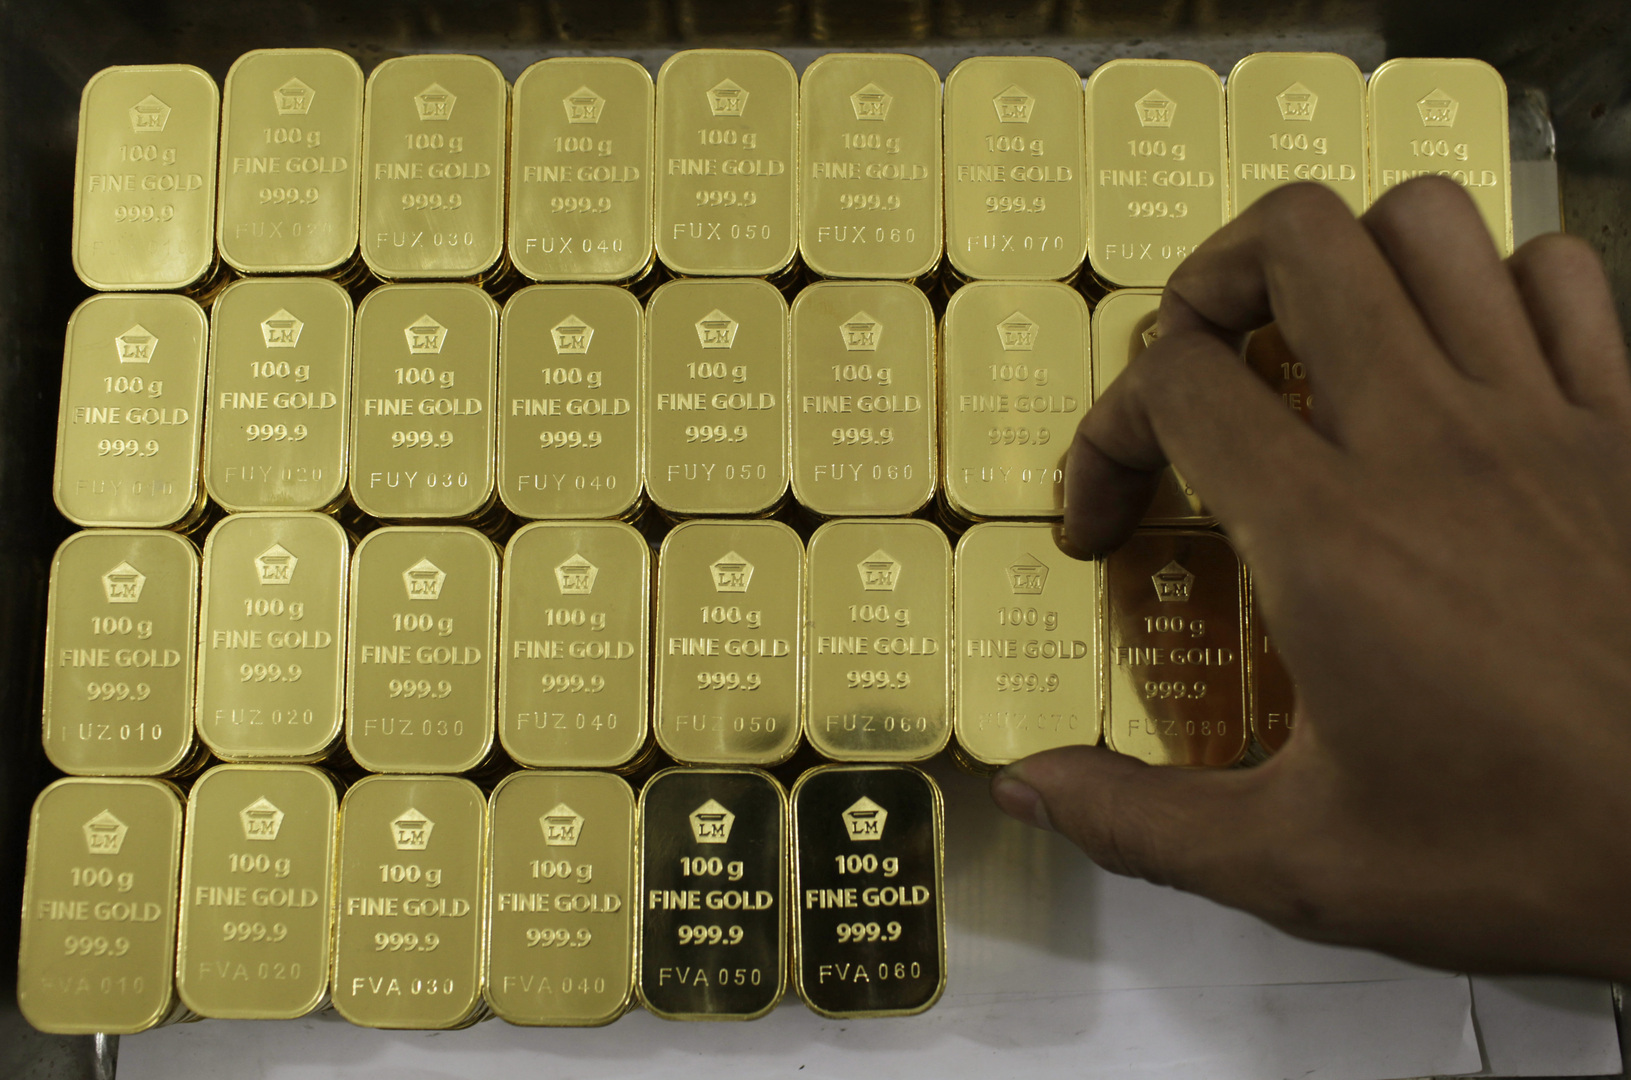 السودان يوقع 10 اتفاقيات للتنقيب عن الذهب